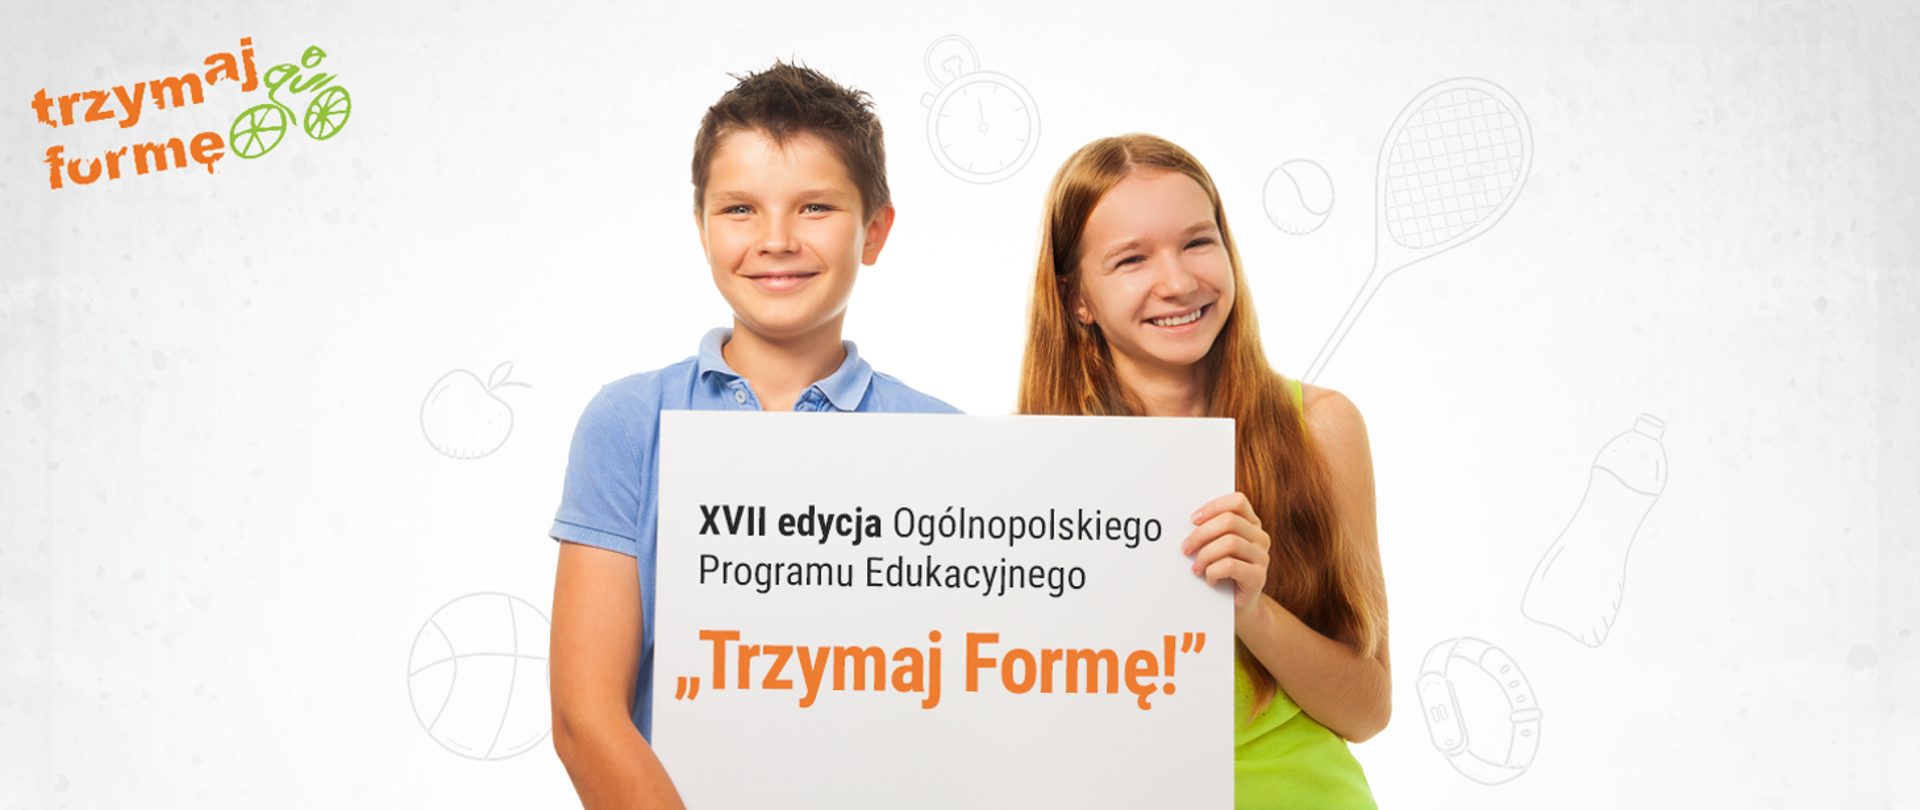 dwójka dzieciaków trzyma tabliczkę z napisem XVII edycja Trzymaj Formę